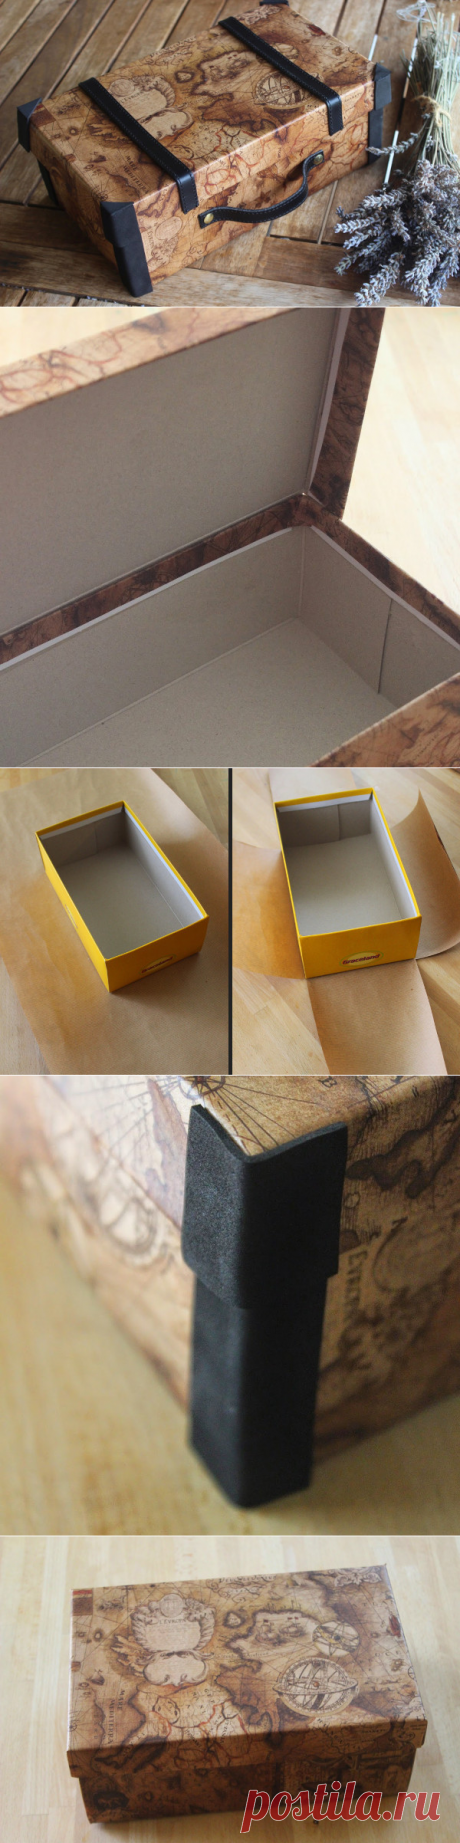 Оригинальная упаковка: как из коробки сделать "чемодан" | X H A N D